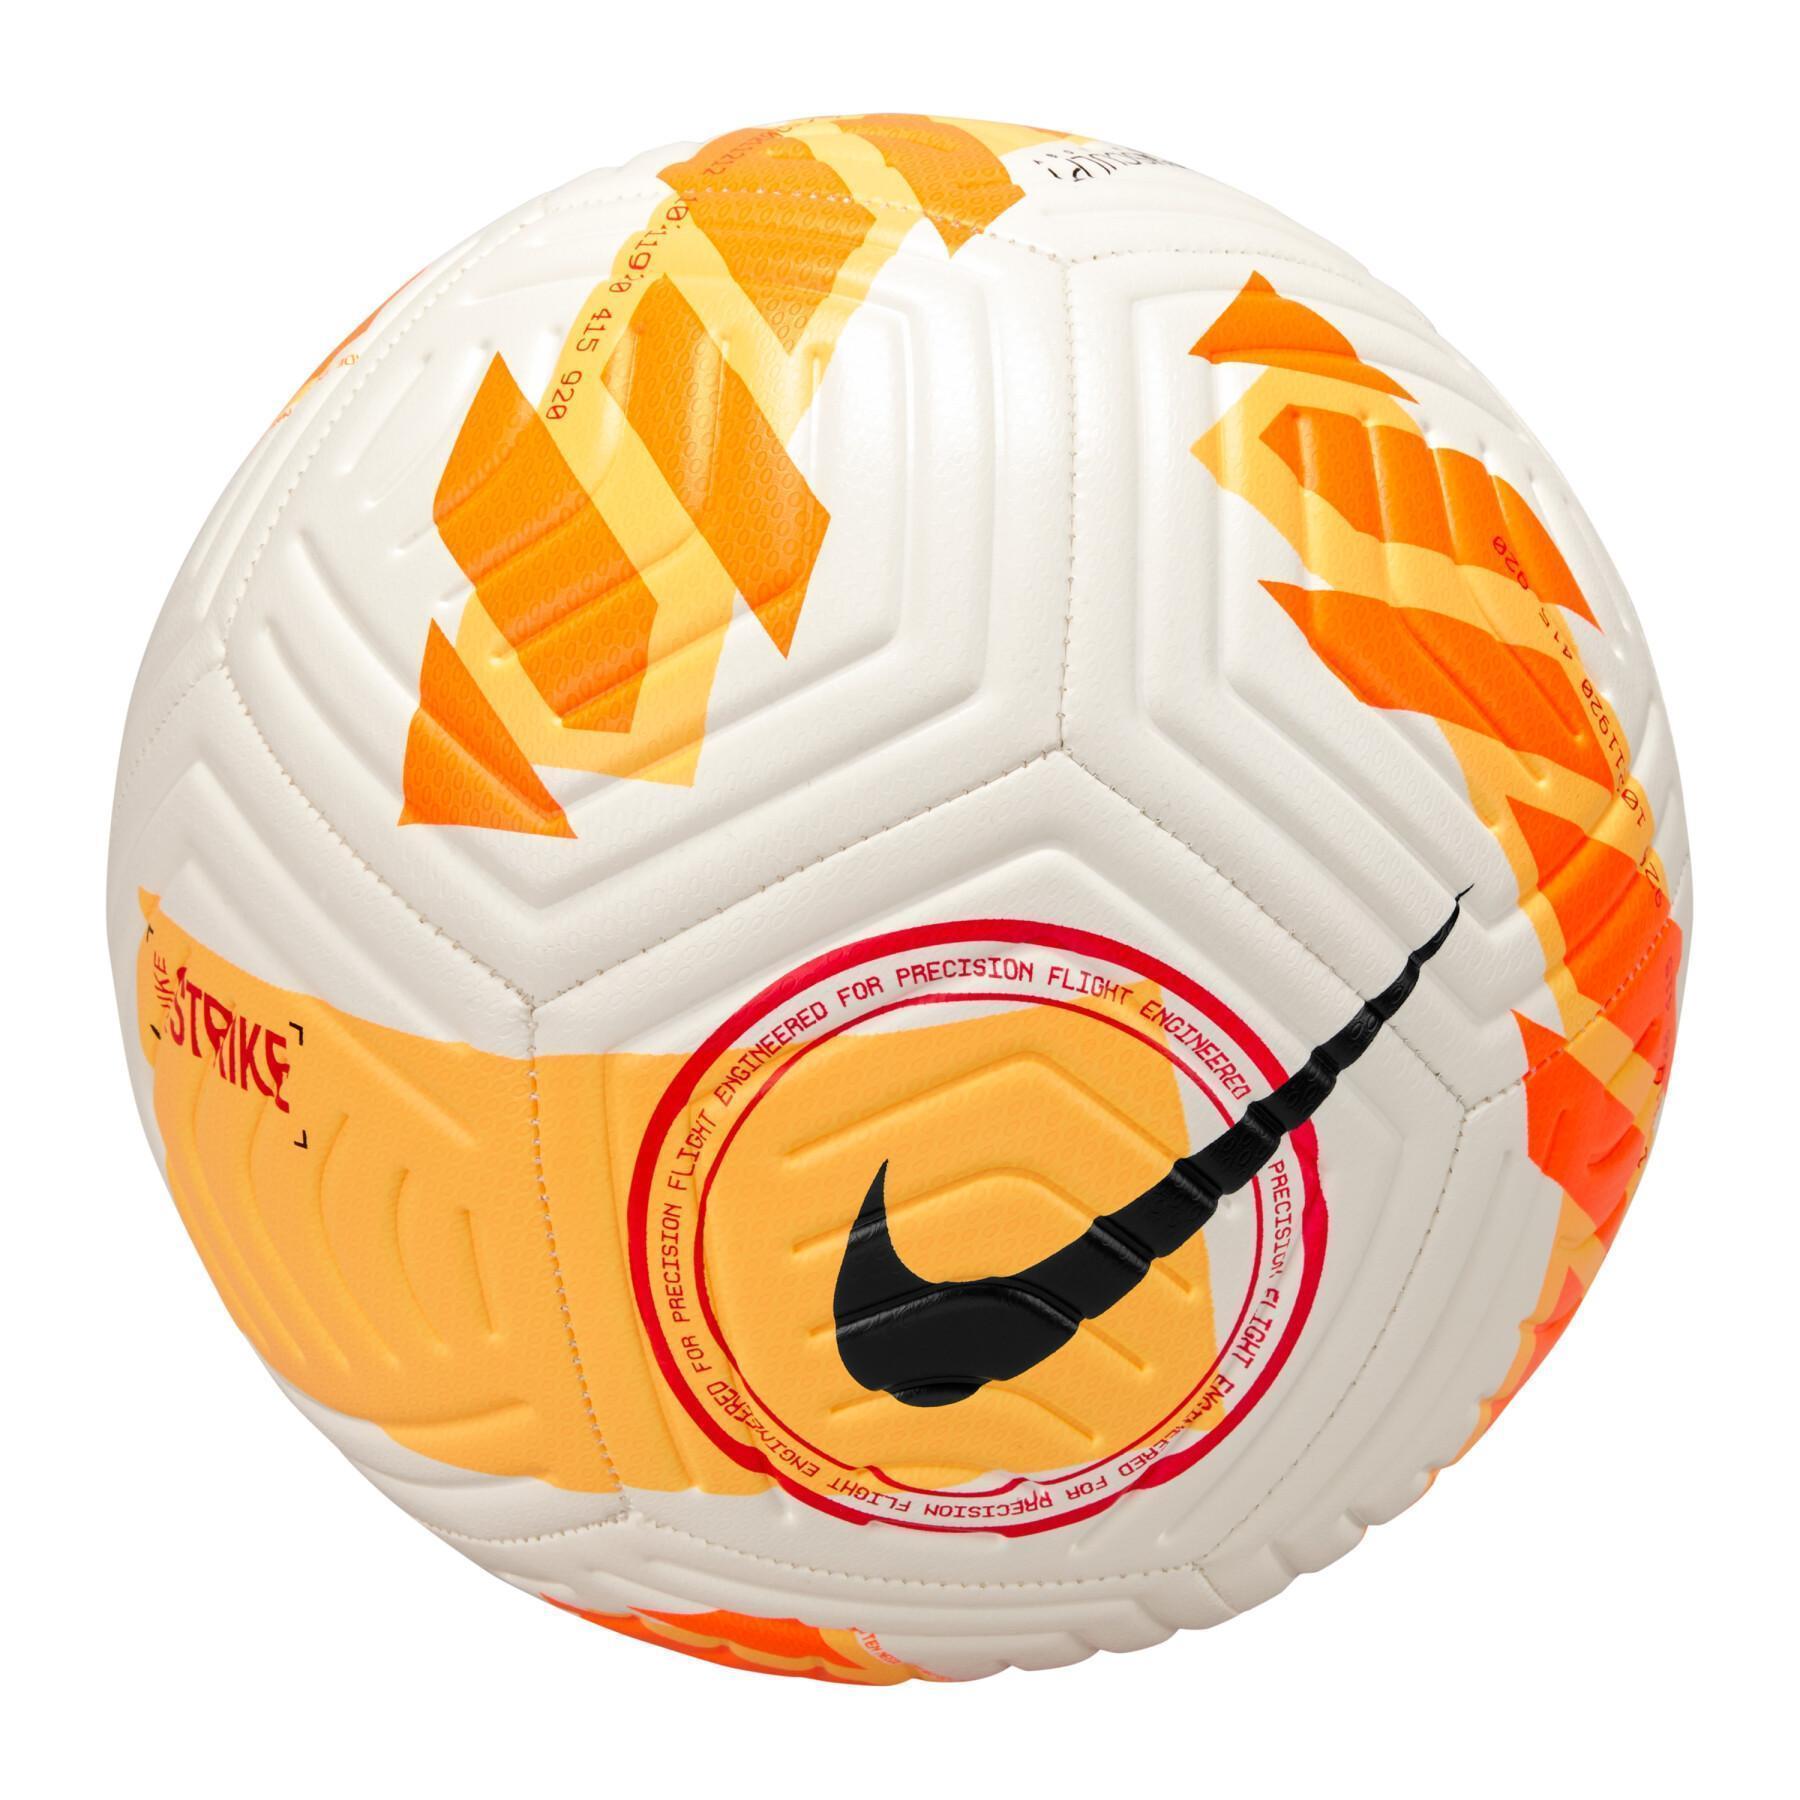 Ballon Nike Strike